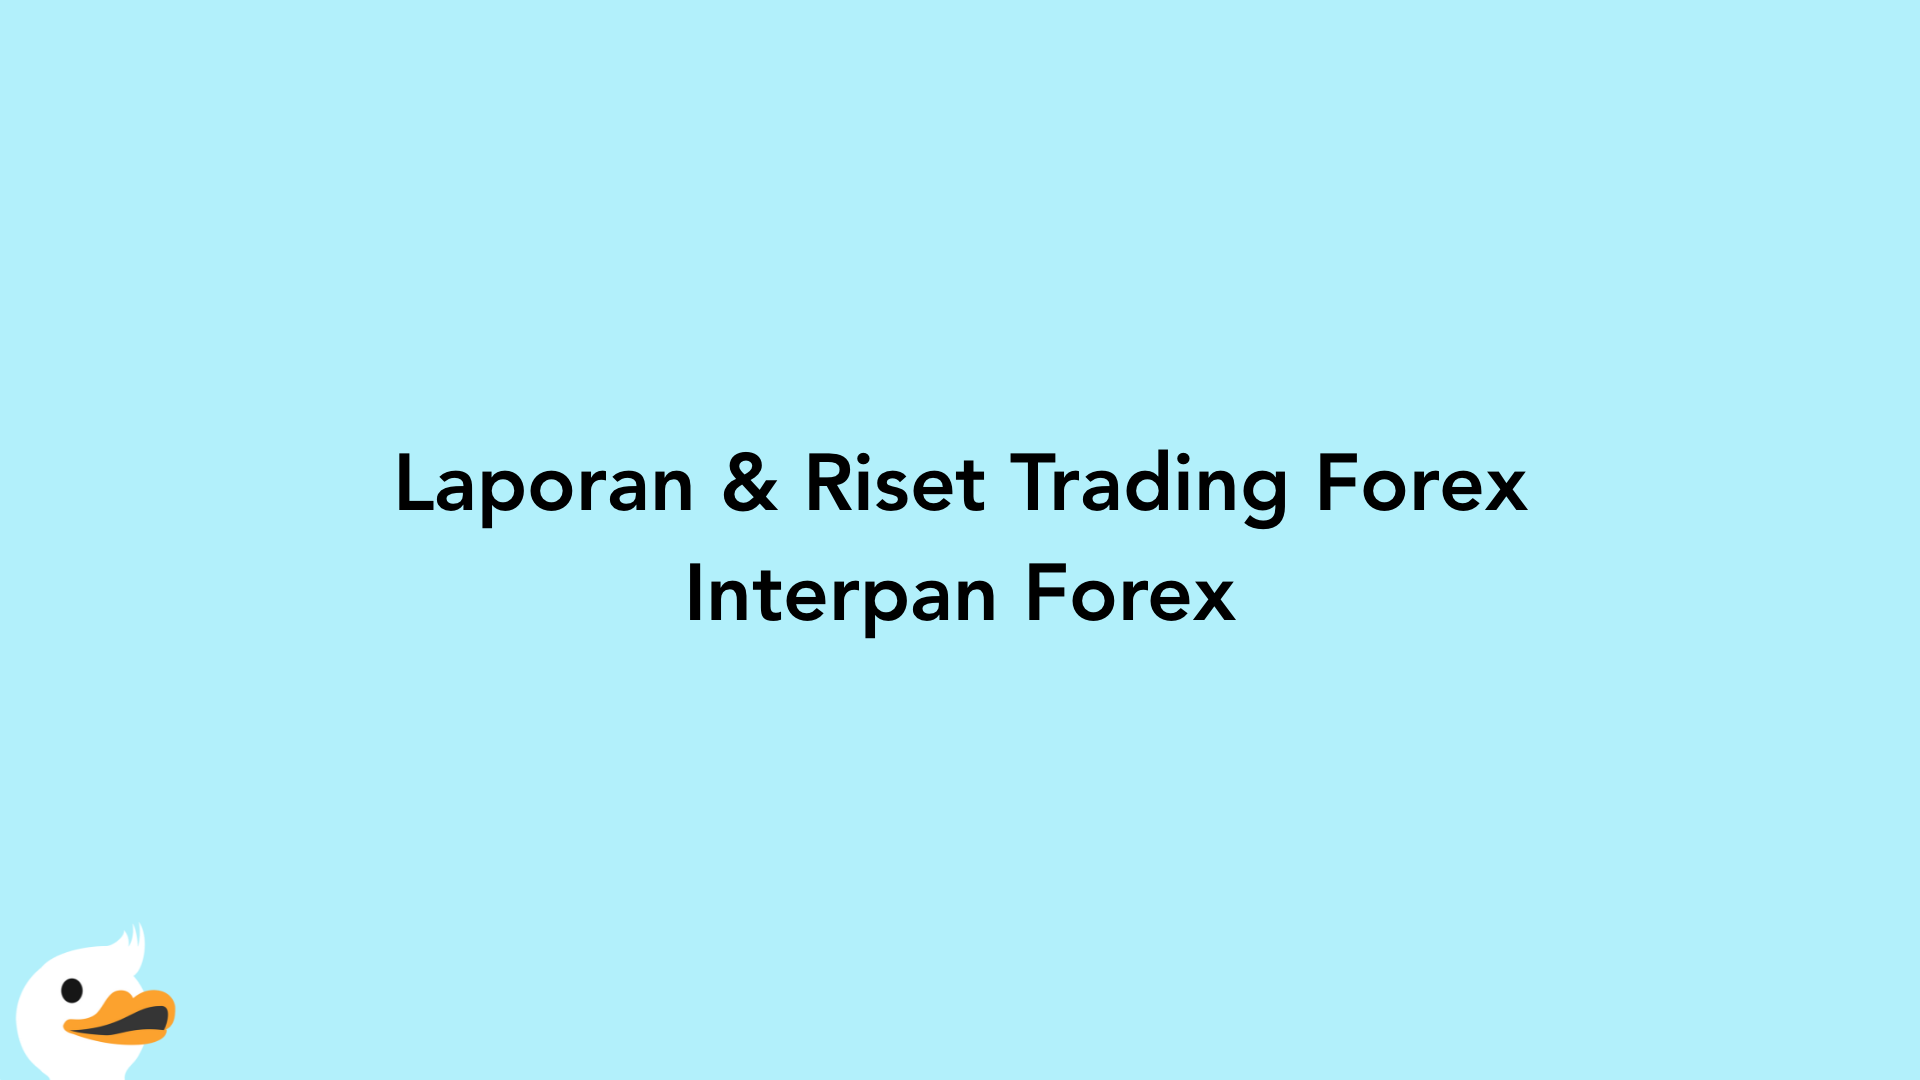 Laporan & Riset Trading Forex Interpan Forex